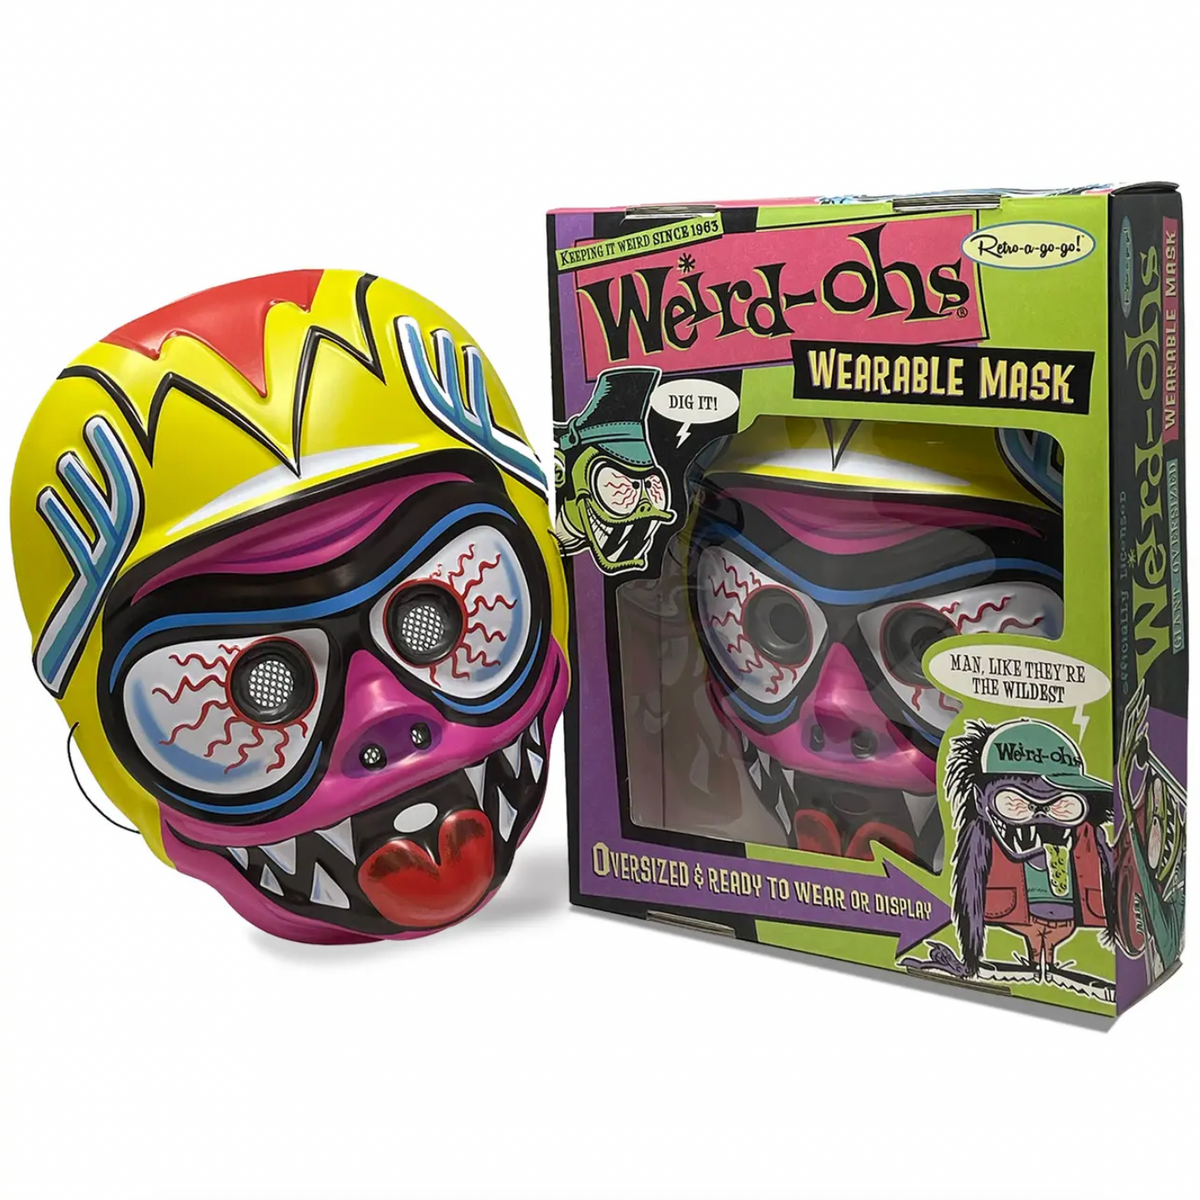 Weird-ohs Digger Wearable Mask - Pink Eye